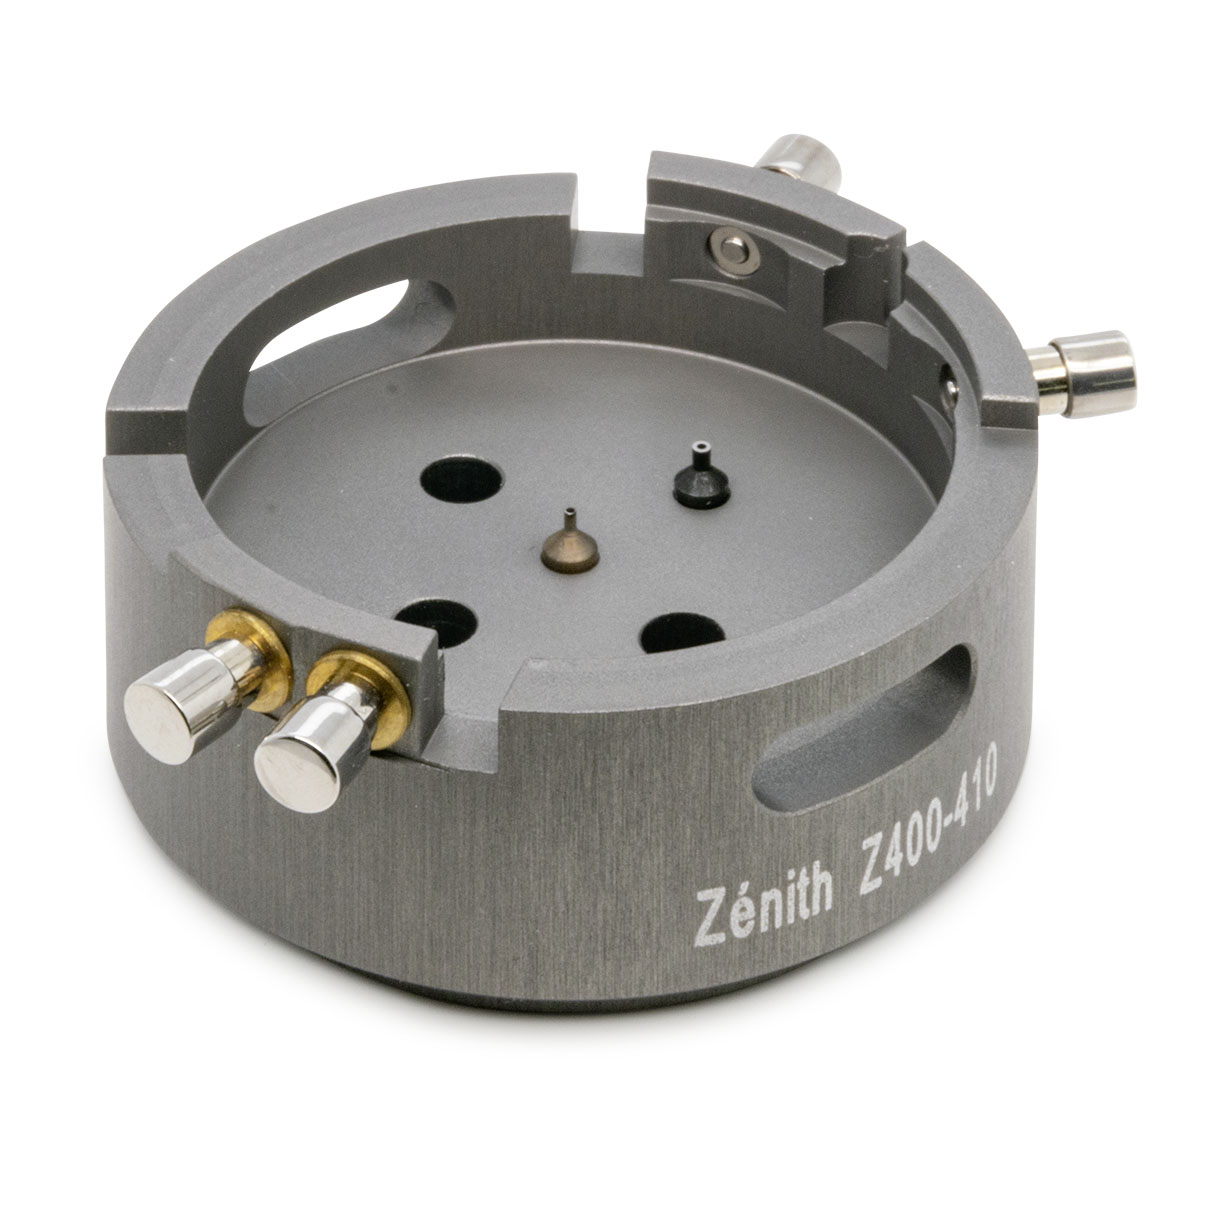 Porte-pièce pour poser les aiguilles pour calibre Zénith Z400-410-420 RV